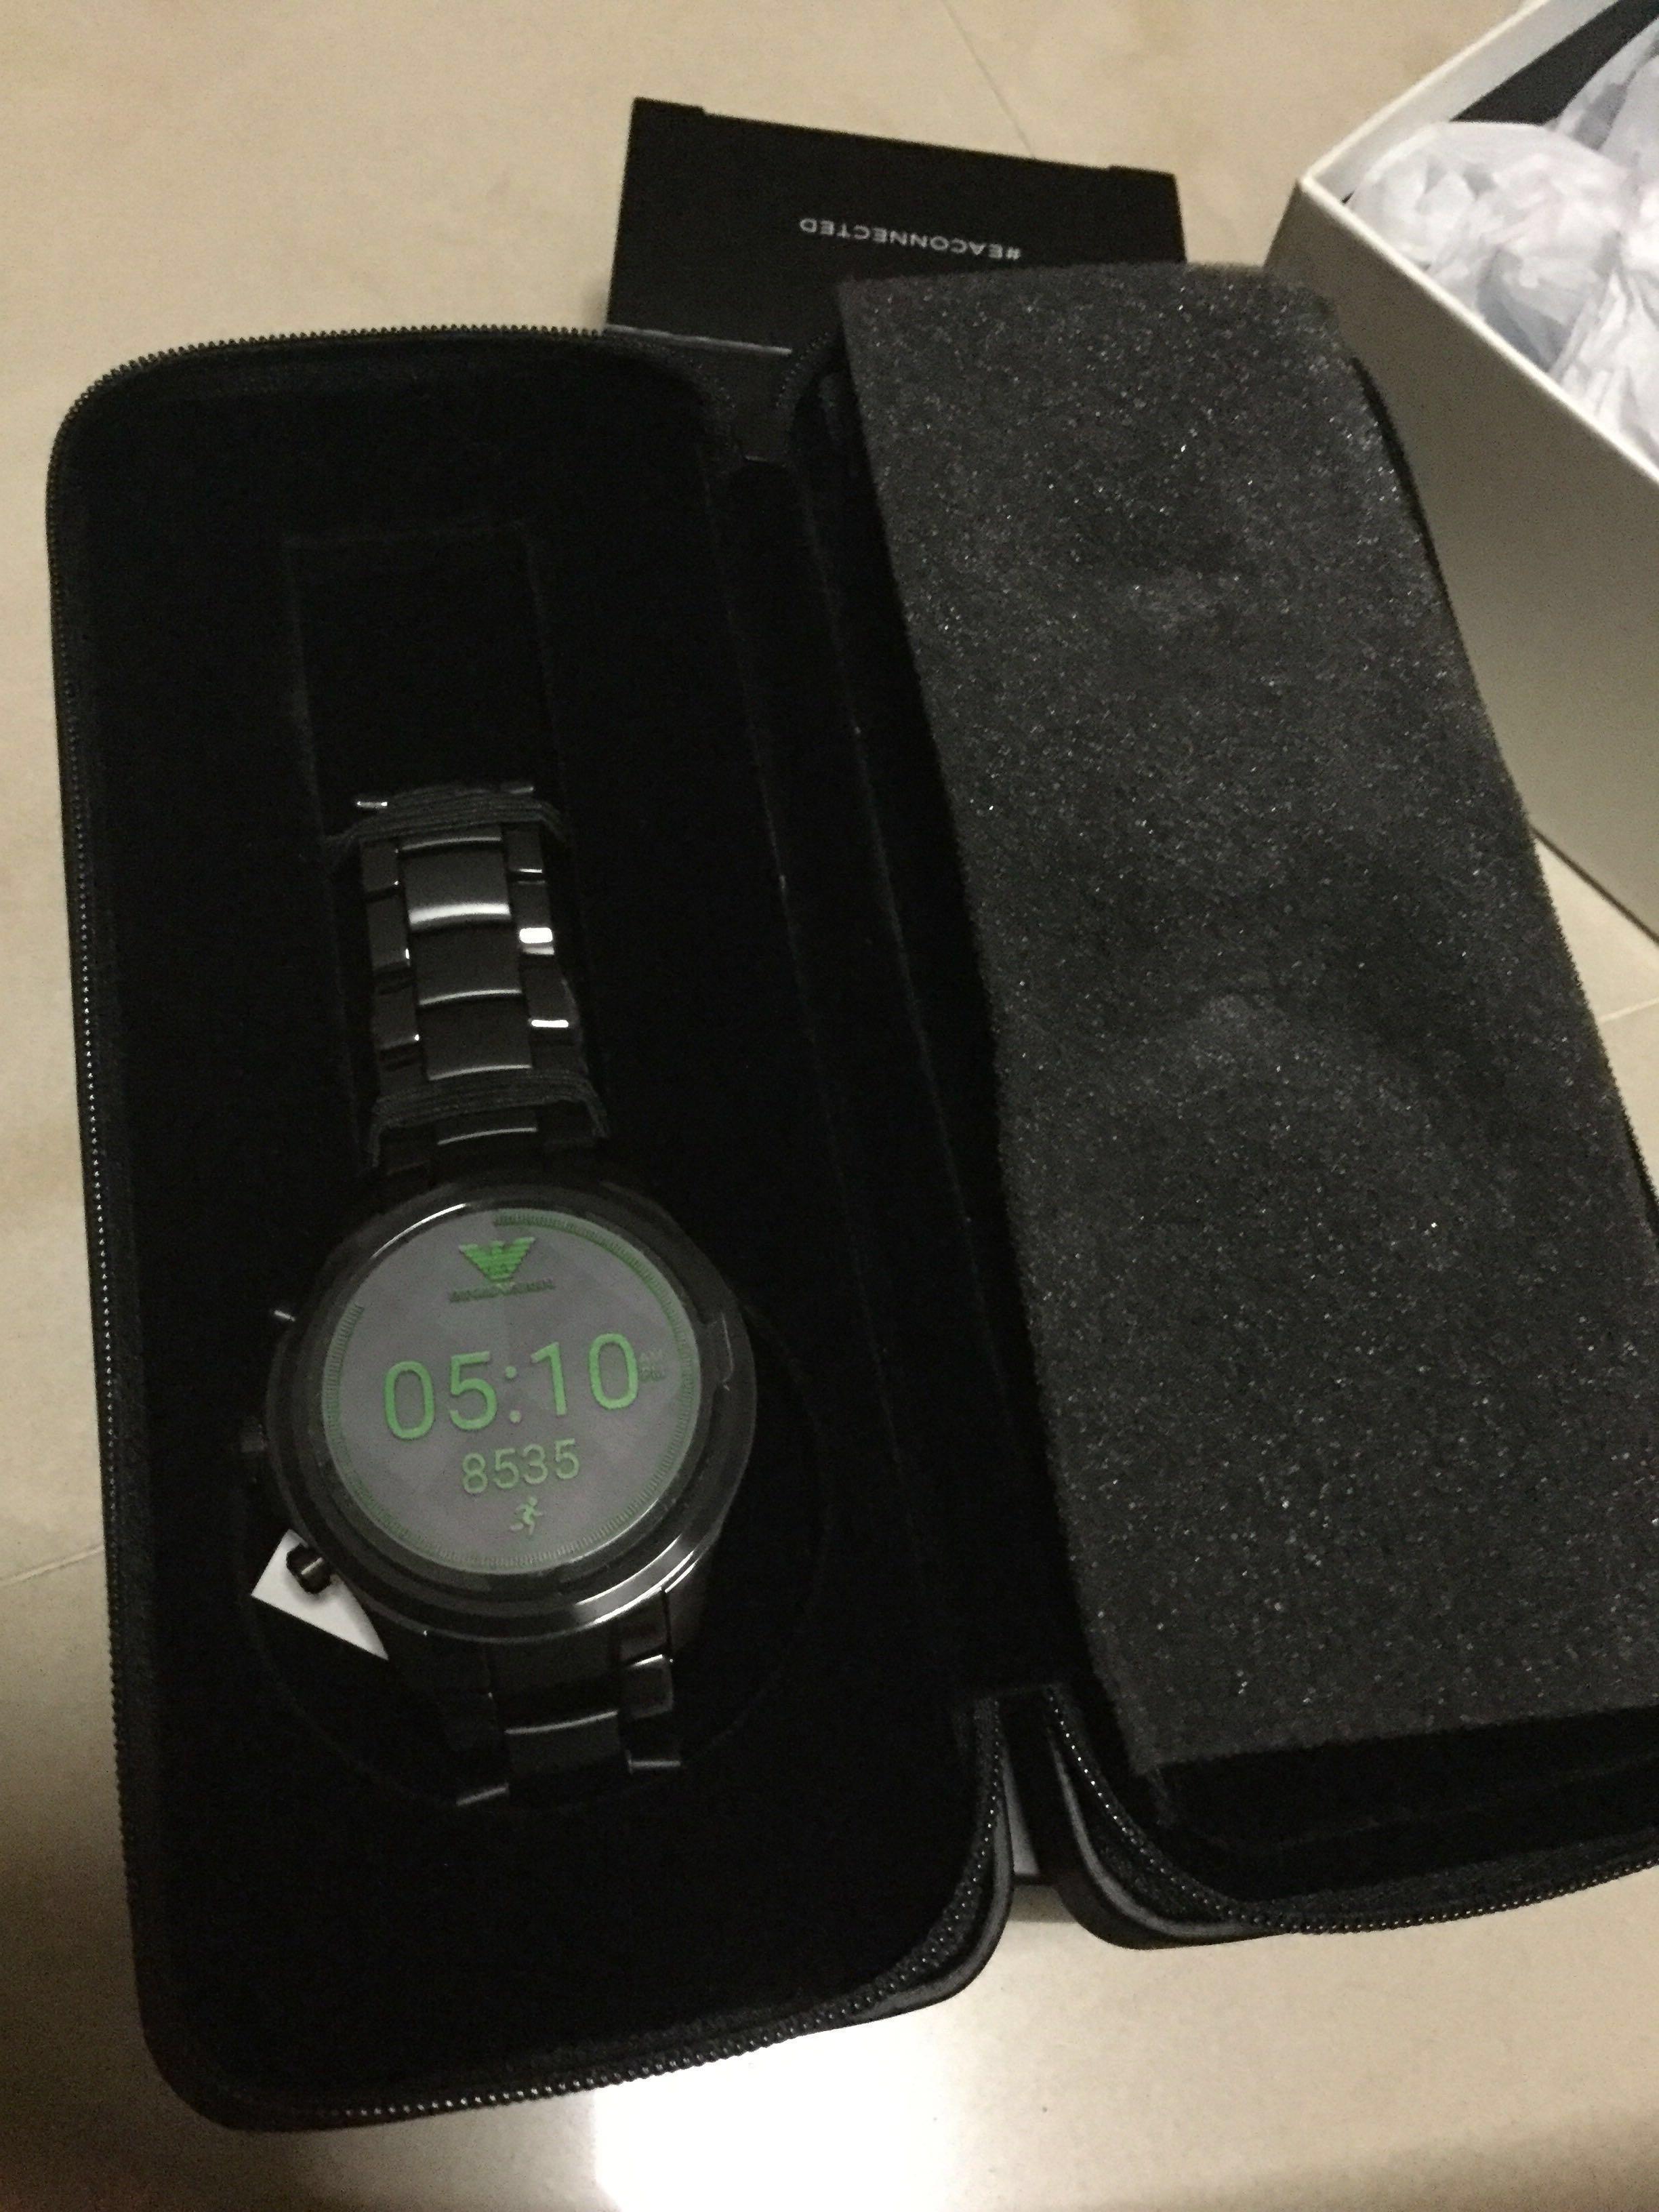 touchscreen smartwatch 5002